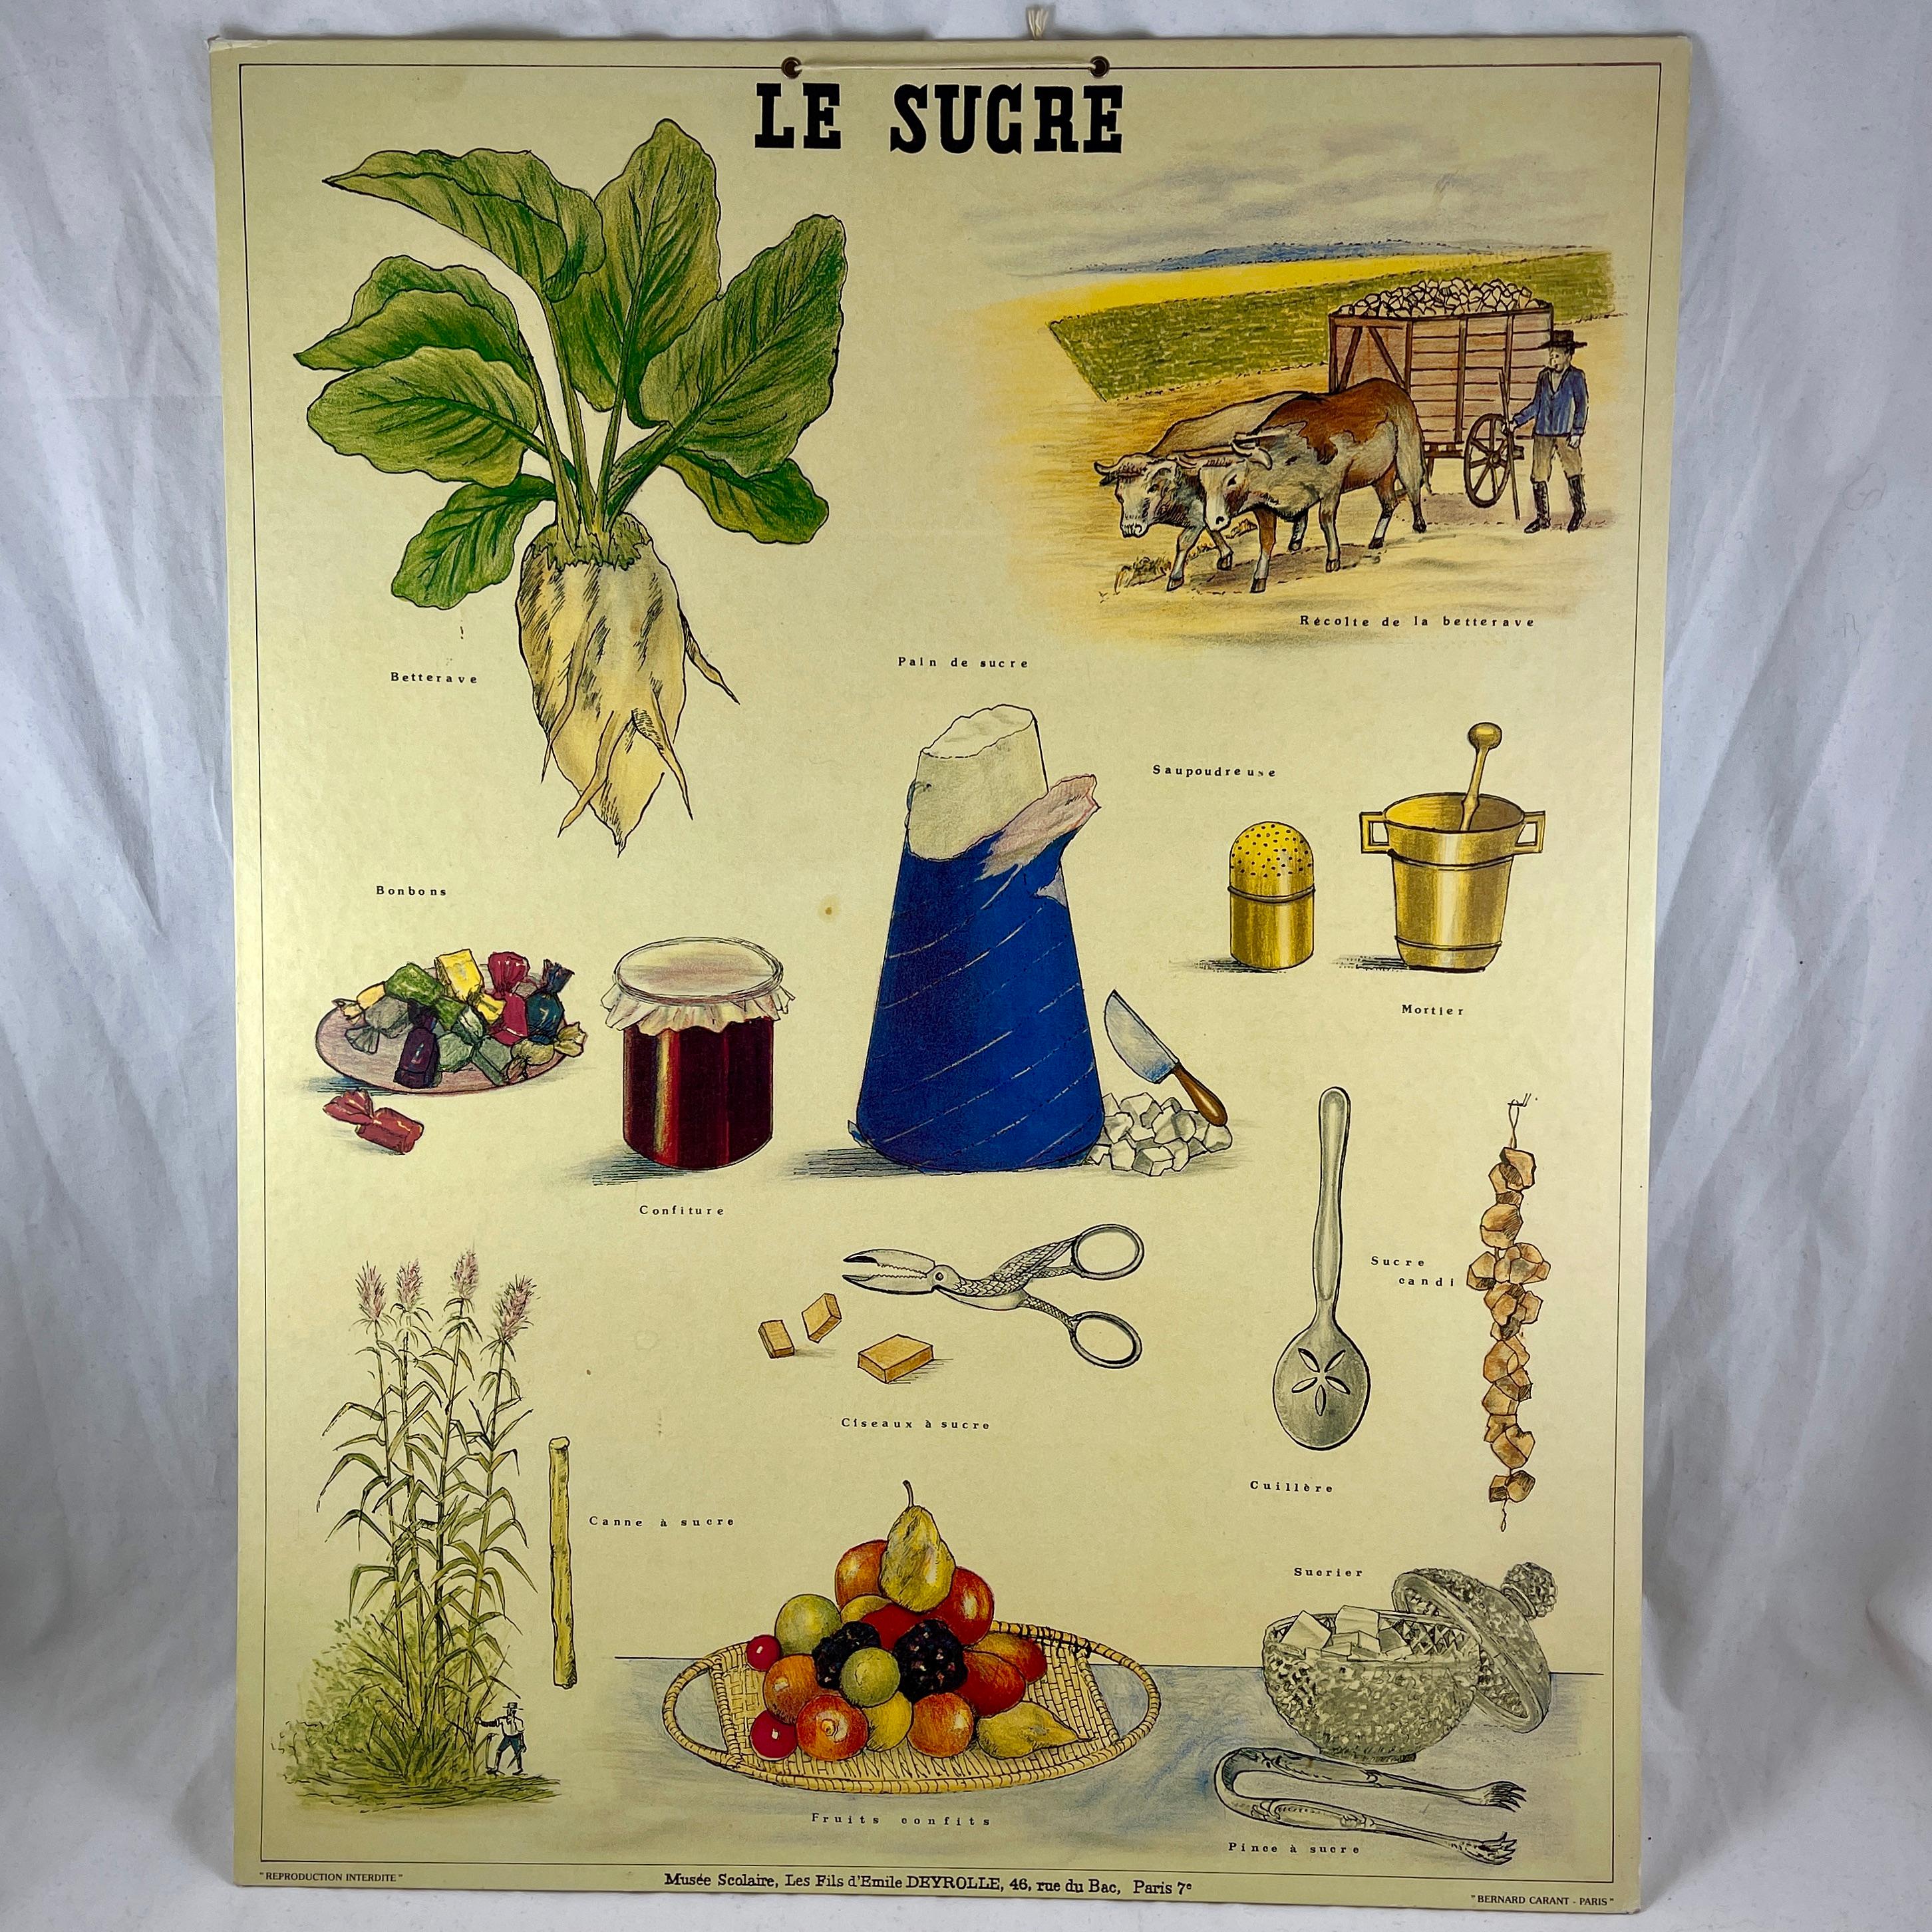 Le Sucre, eine montierte, im Offsetdruckverfahren hergestellte Lithografie des französischen Naturforschers Émile Deyrolle - gedruckt für den Unterricht bei Bernard Carant, Paris, Frankreich, ca. 1930er-1940er Jahre.

Es handelt sich um einen